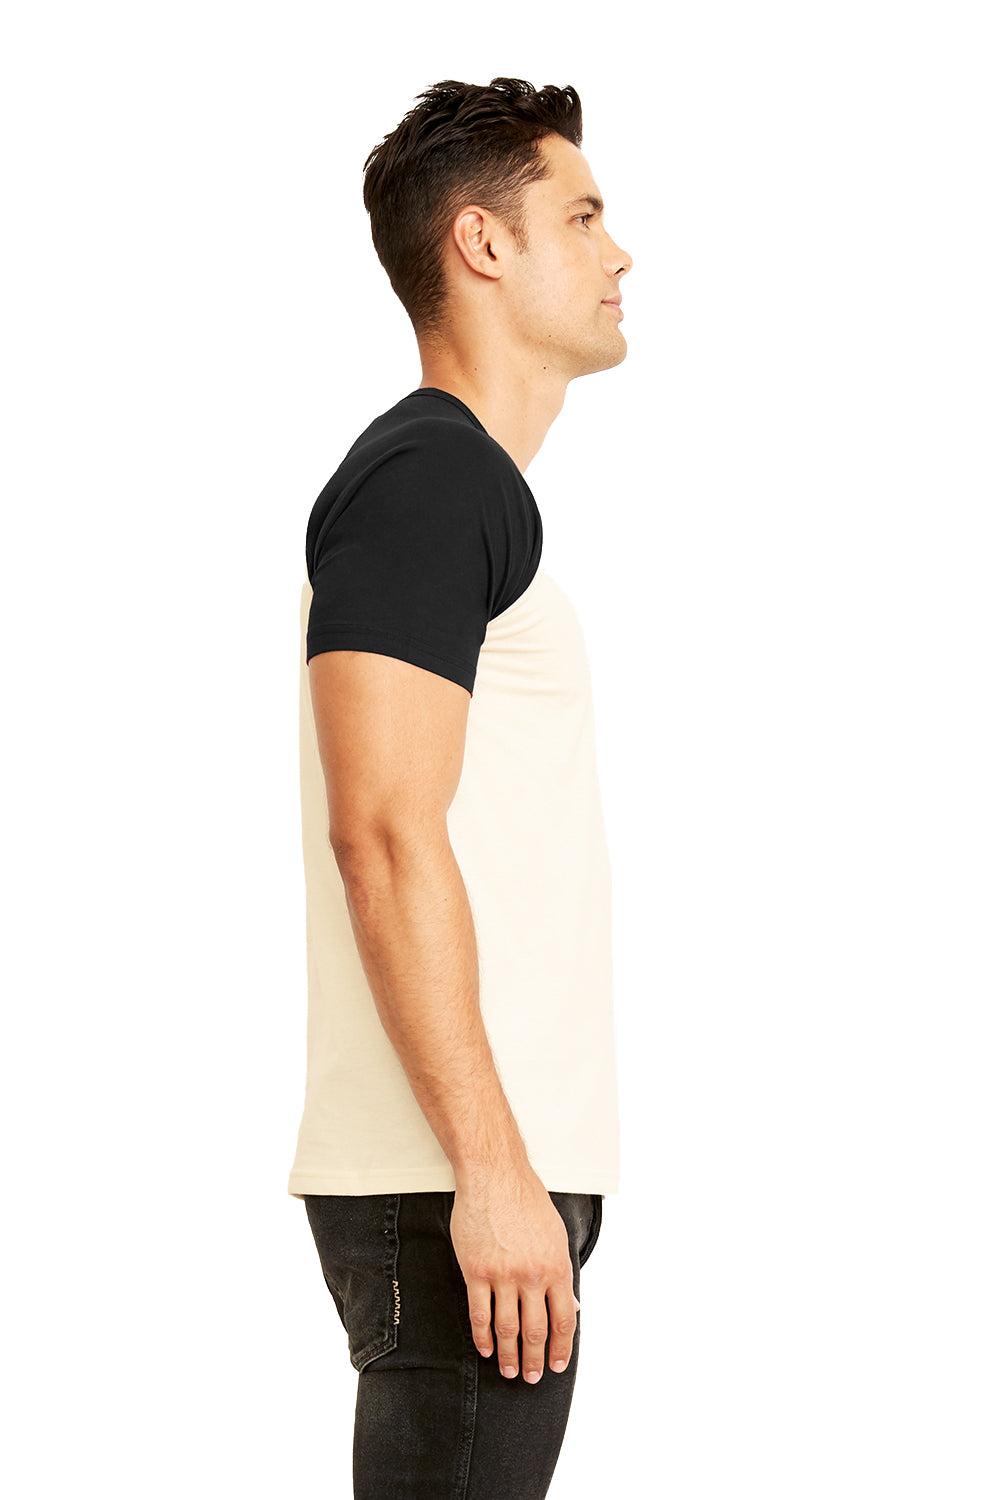 Next Level N3650 Mens Fine Jersey Short Sleeve Crewneck T-Shirt Black/Natural Side